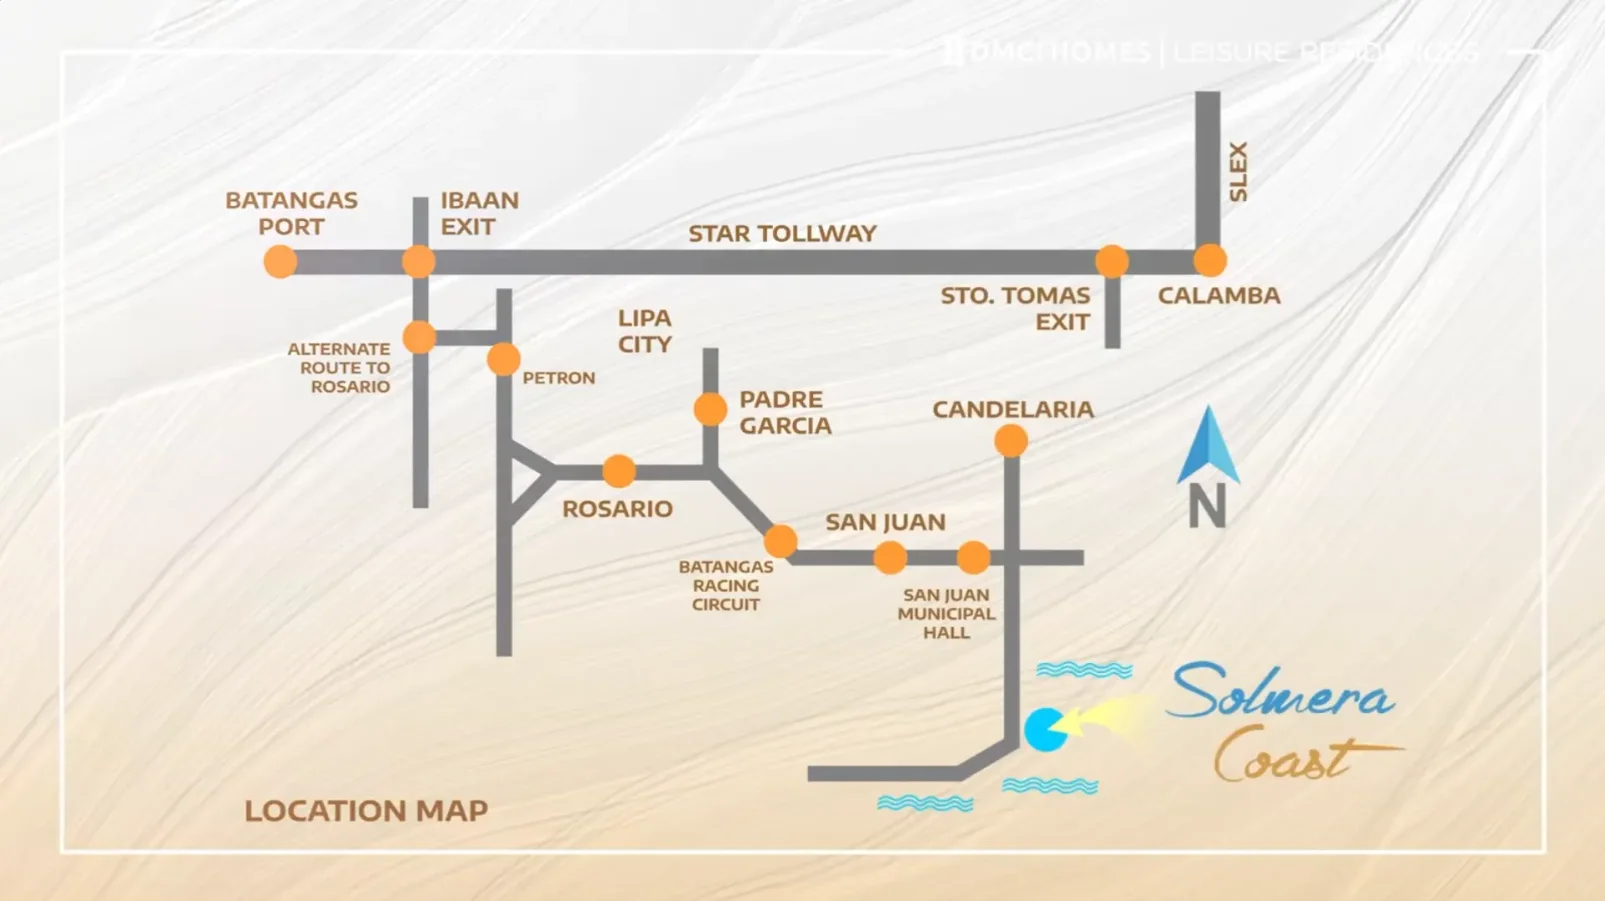 solmera coast location map